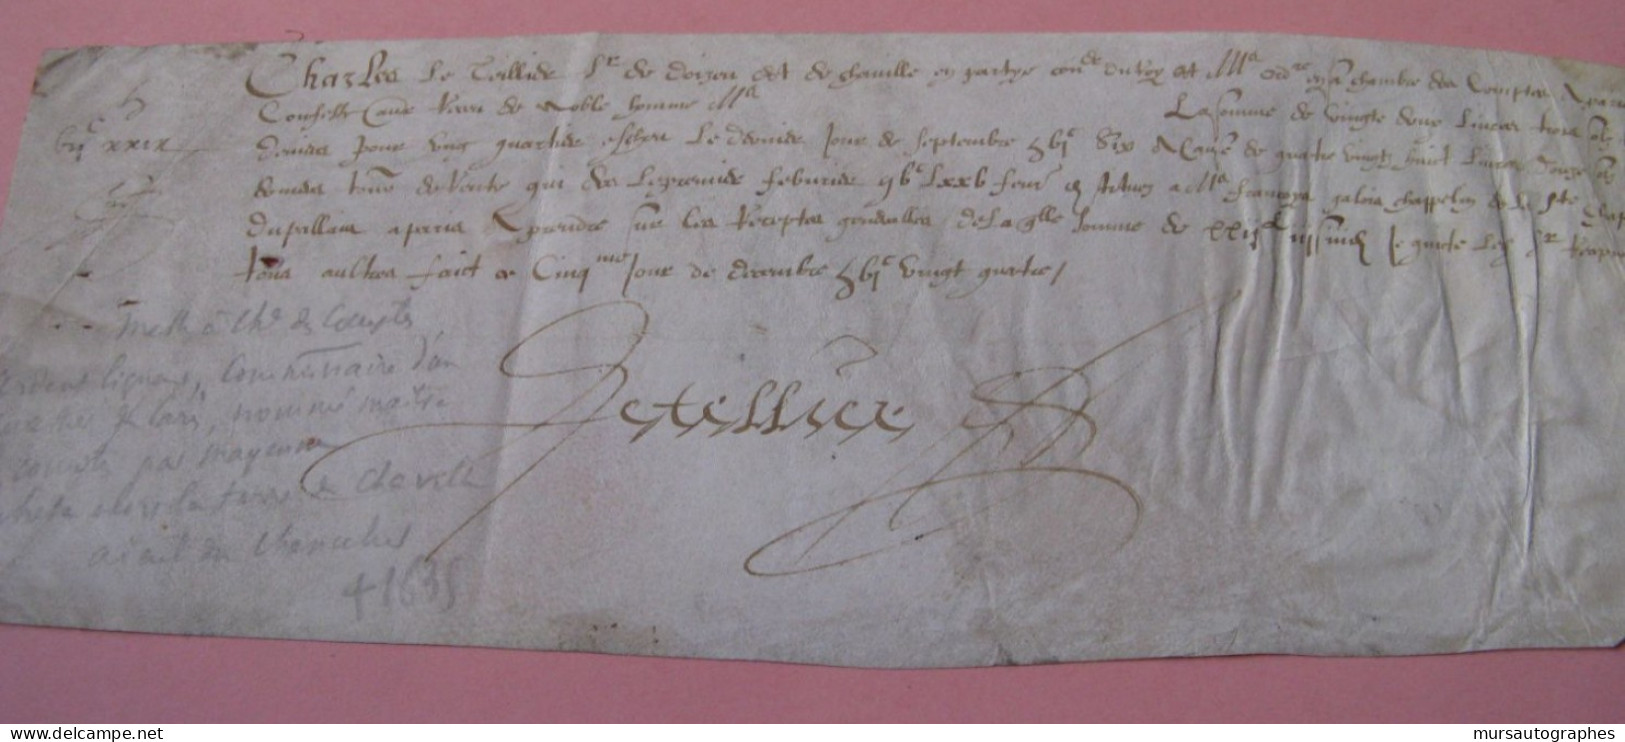 CHARLES LE TELLIER Autographe Signé 1624 LIGUEUR COMMISSAIRE PARIS MAITRE COMPTES - Historical Figures